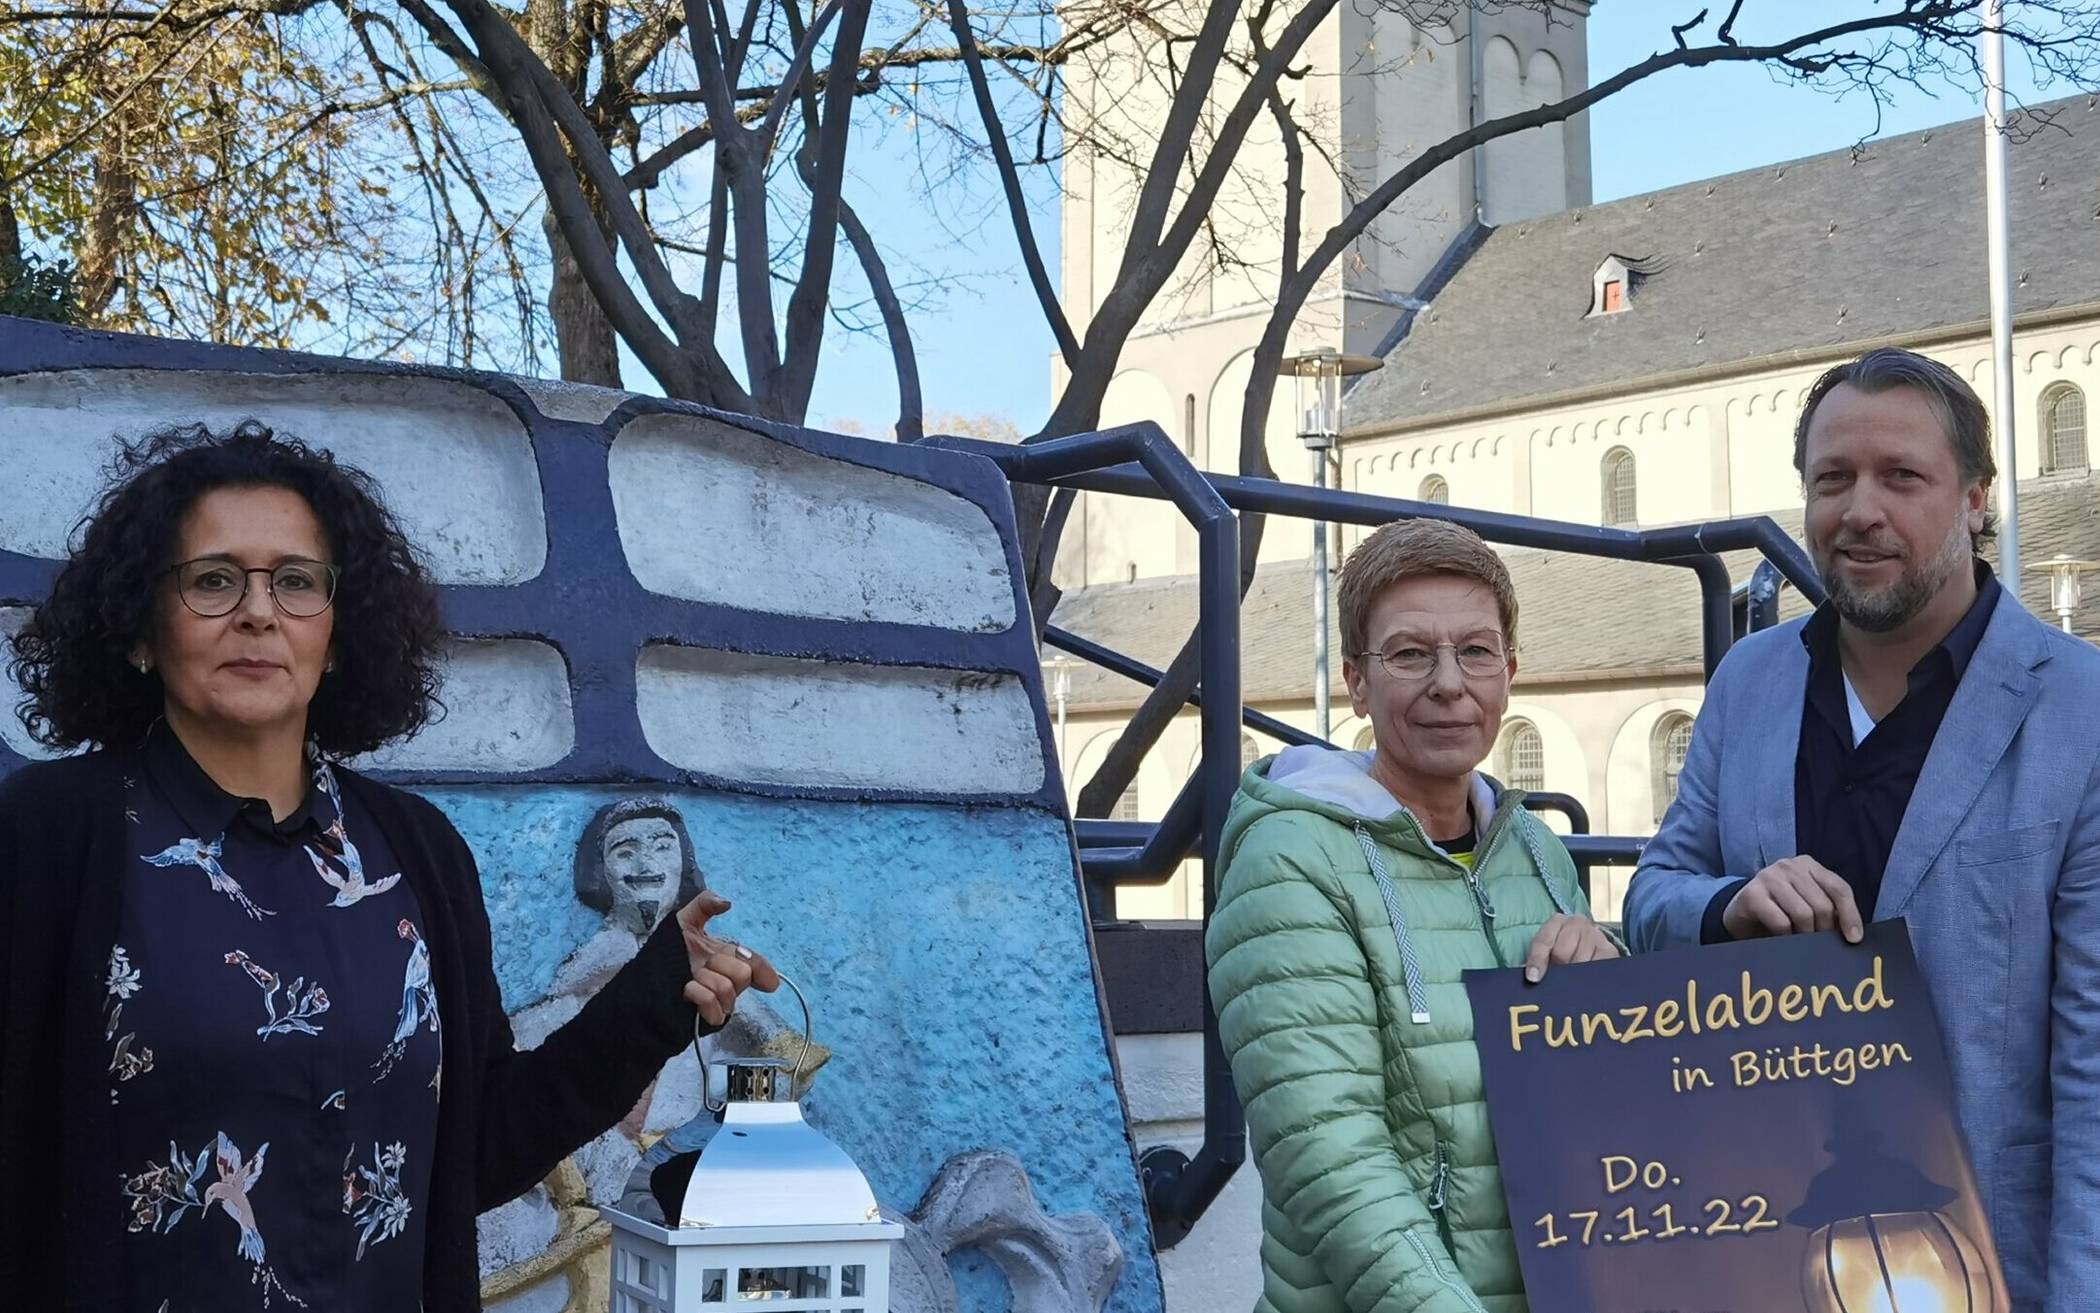 Sie machen Reklame für den Büttgener „Funzelabend“ 2022: Norka Palomino, Birgit Scholz-Busch und Patrick Lessmann freuen sich auf zahlreiche Besucher am 17. November.   